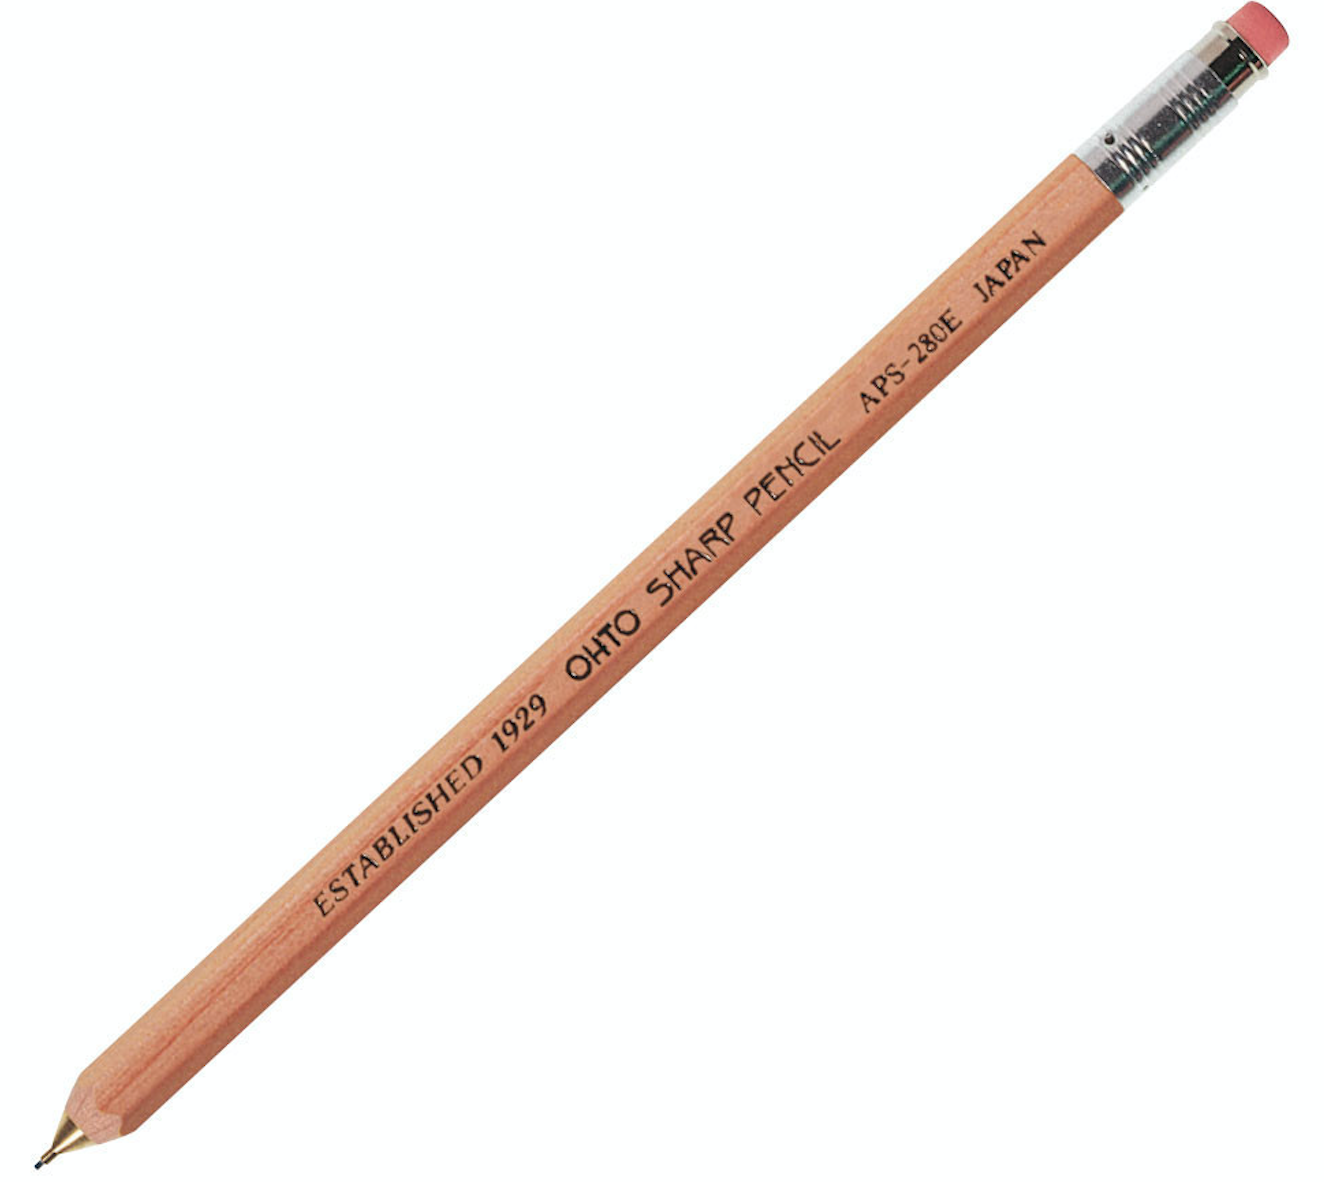 Wooden Mechanical Pencil - 0.5mm